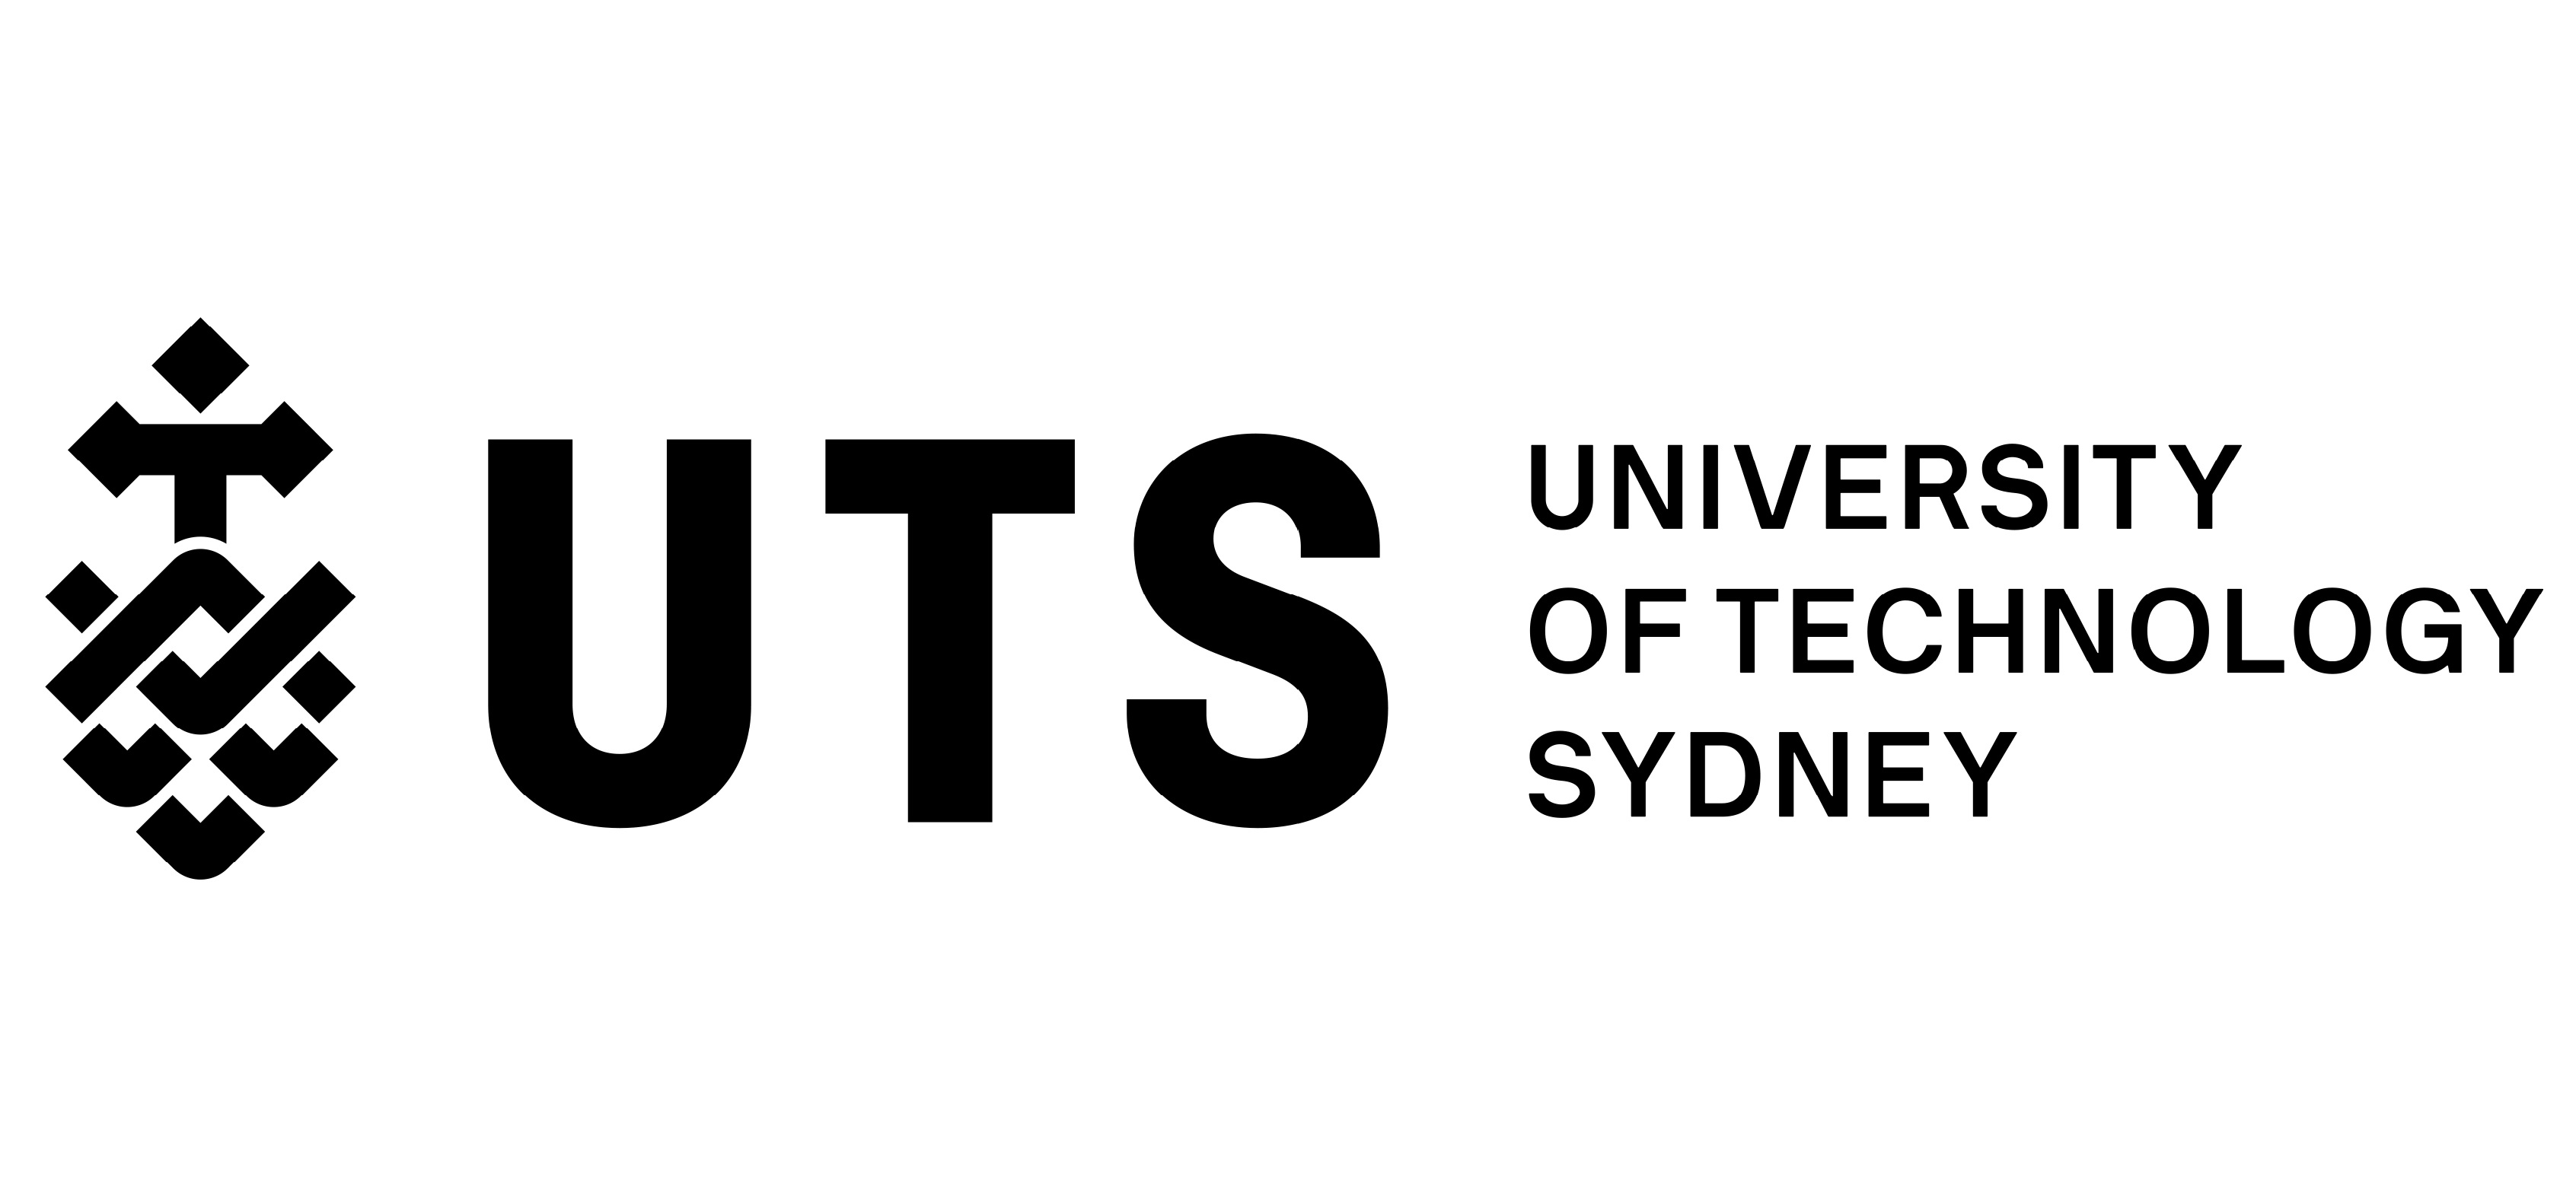 University of Technology, Sydney